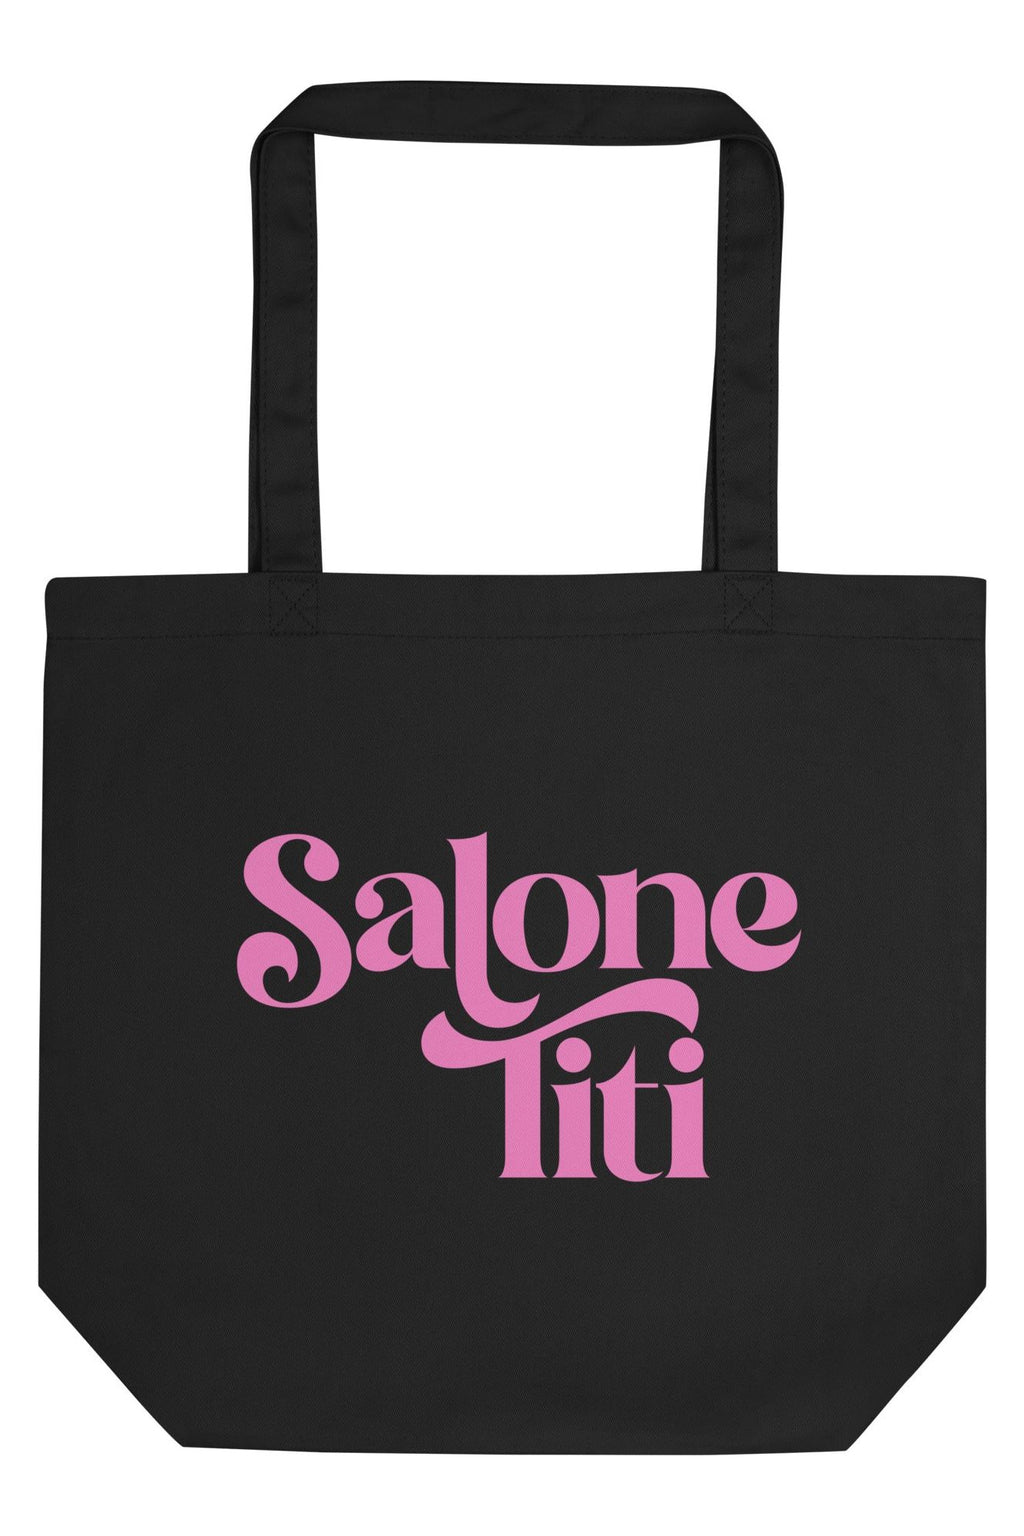 Salone Titi Tote Bag- Pink - Mission LaneTote